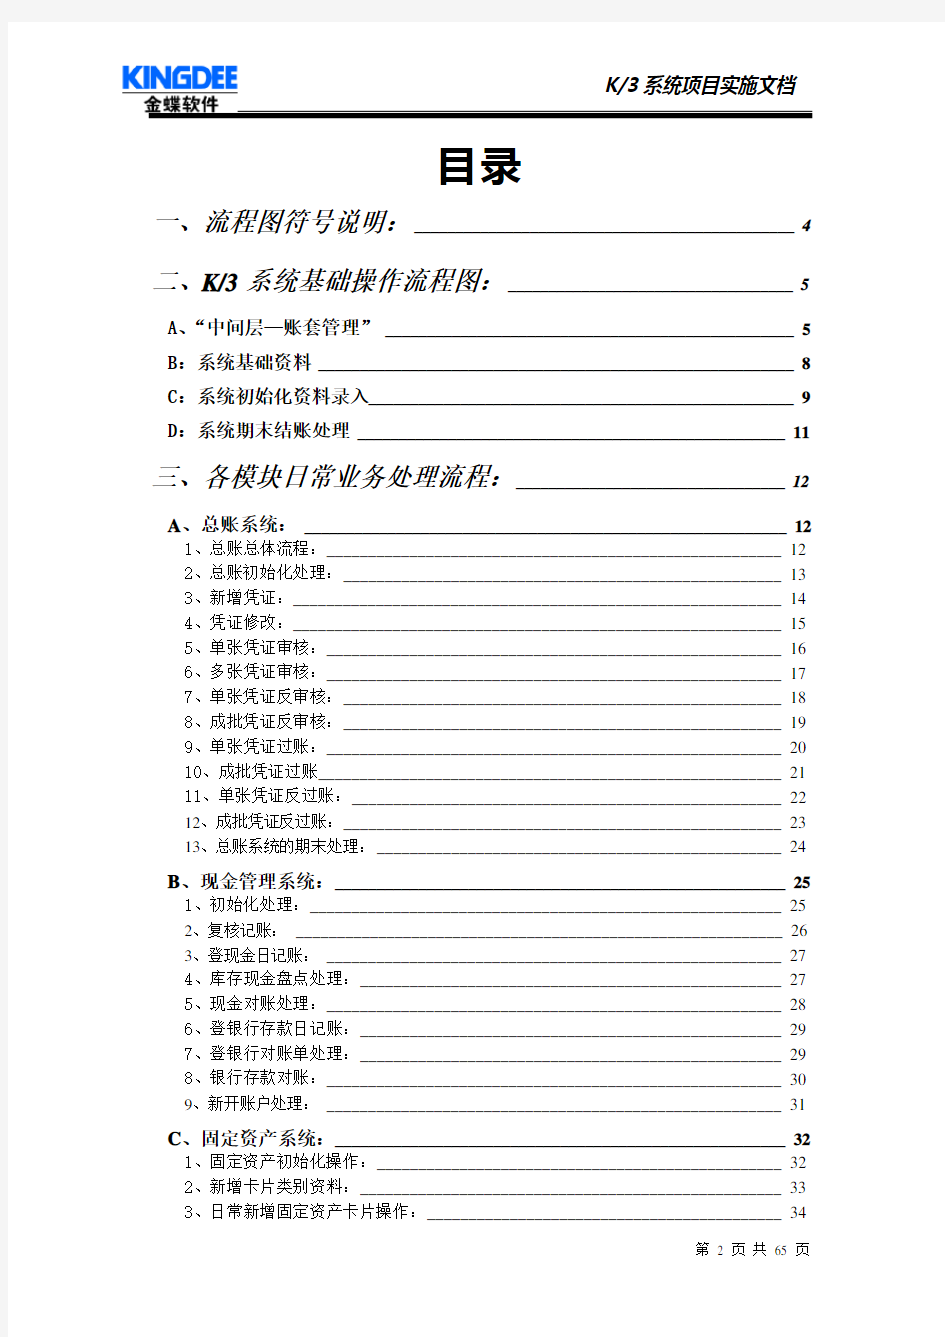 金蝶K3操作流程图详解(65页)